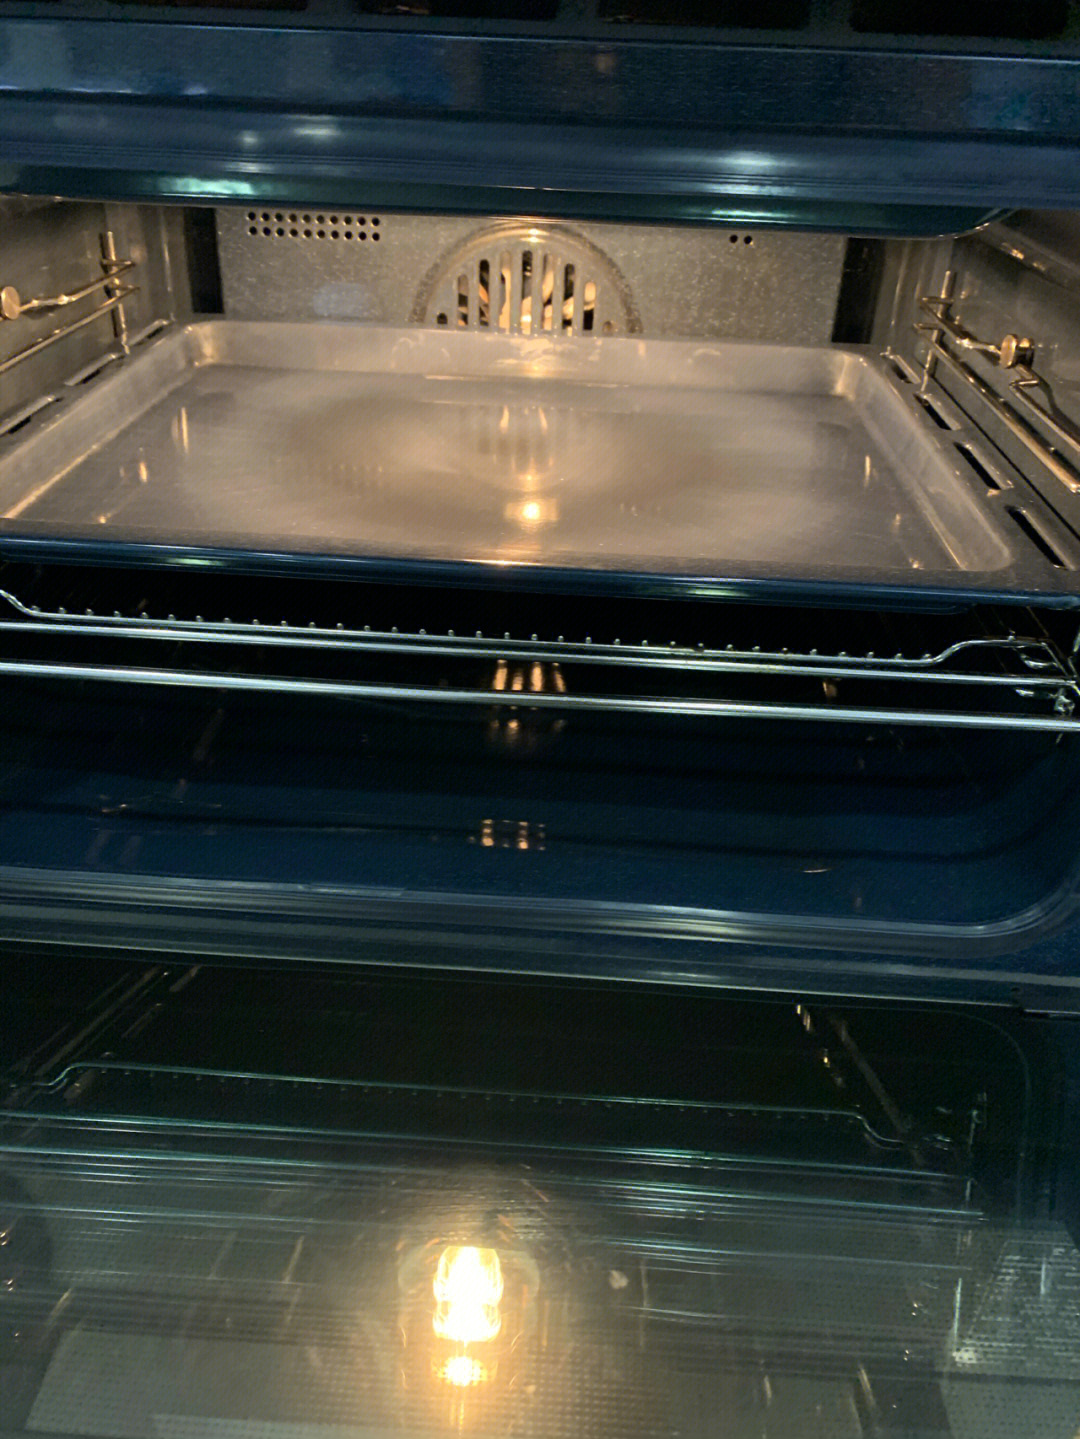 有了老板蒸烤一体机c906,想蒸箱烤都随心所欲,不会做菜的人都可以做出